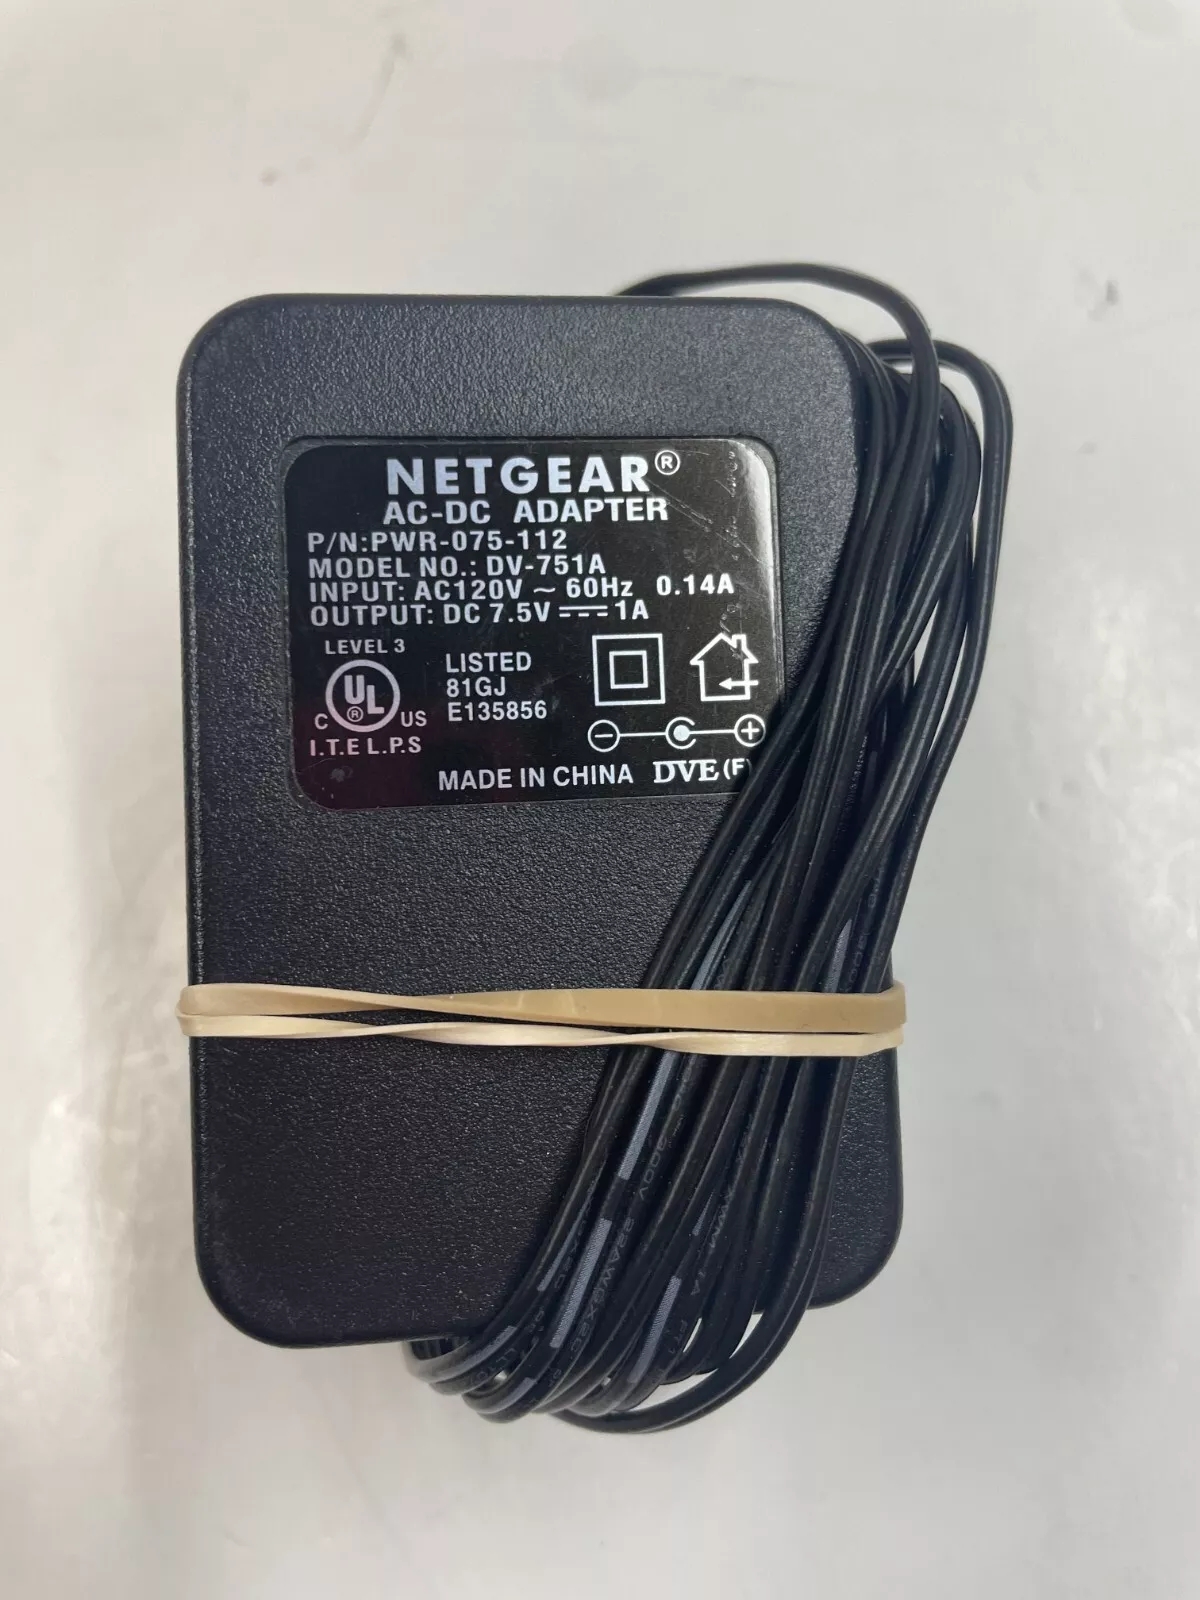 *Brand NEW*Netgear DV-751A AC120V DC 7.5V 1A AC ADAPTER Power Supply